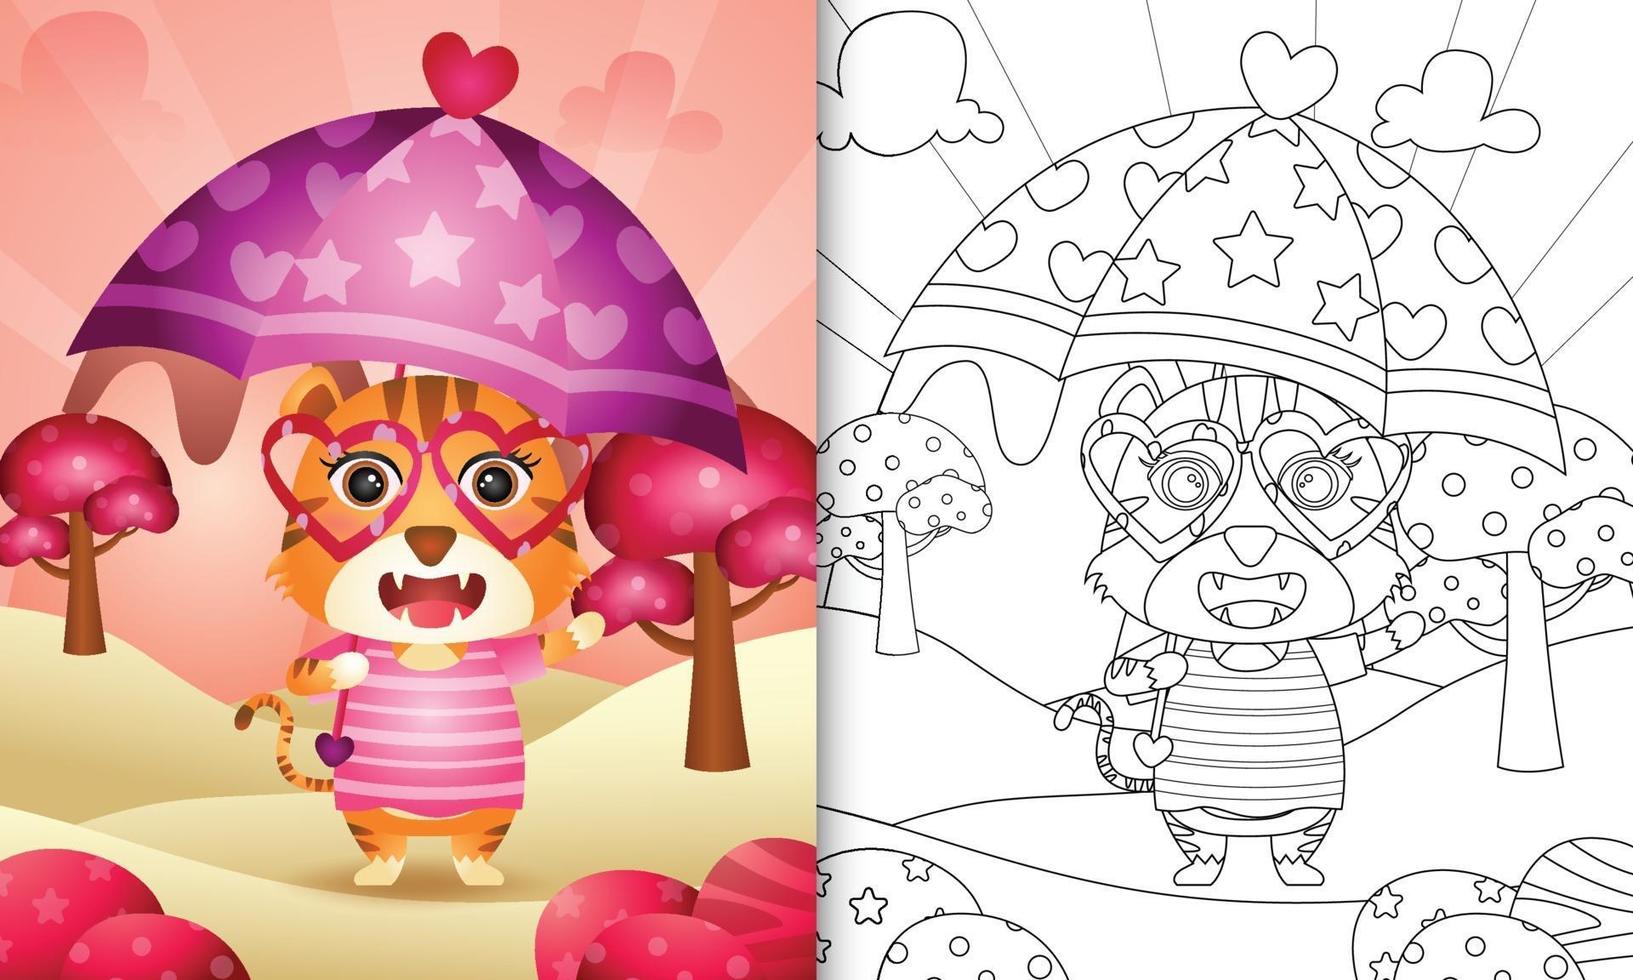 livro de colorir para crianças com um tigre fofo segurando guarda-chuva com o tema do dia dos namorados vetor